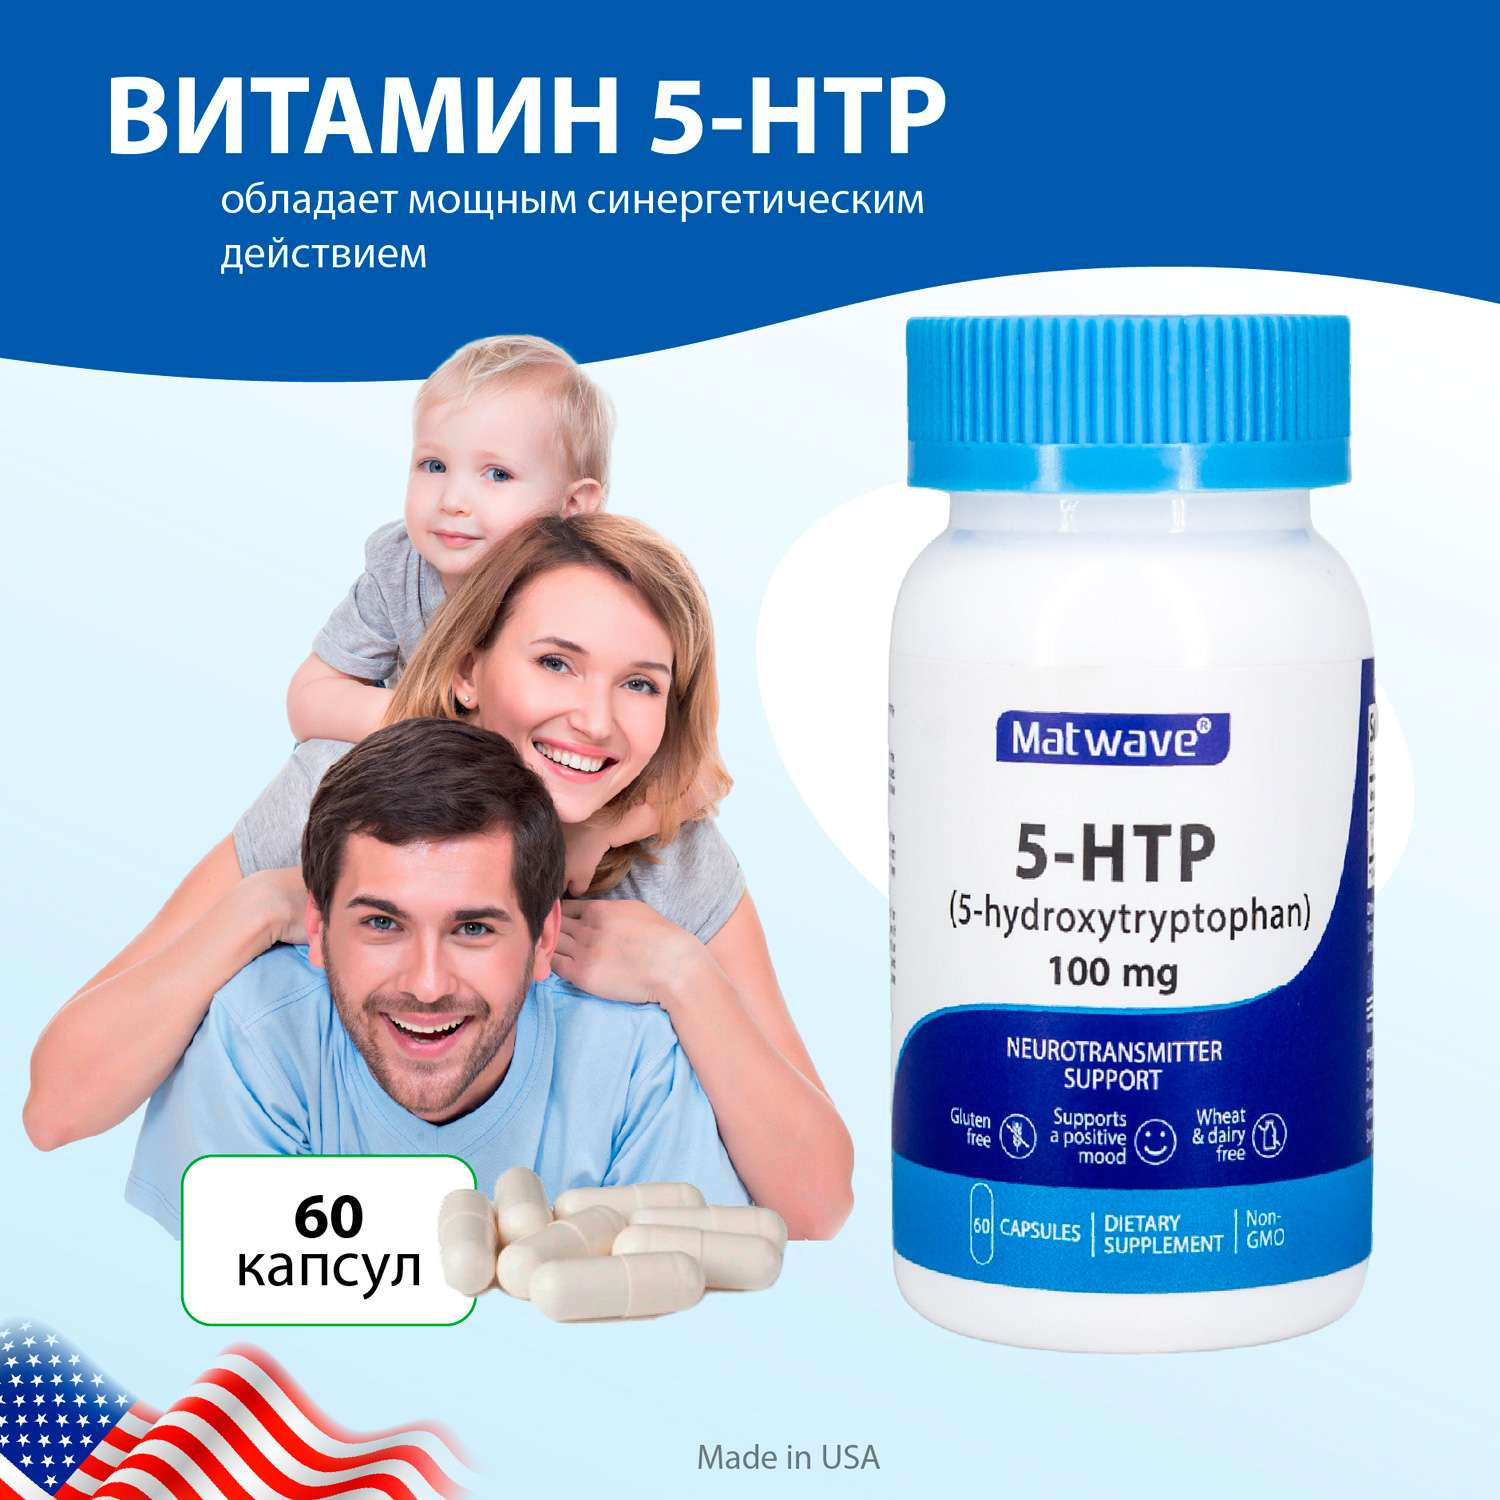 БАД Matwave 5-HTP 100 mg 5-гидрокситриптофан 60 капсул комплект 2 банки - фото 4